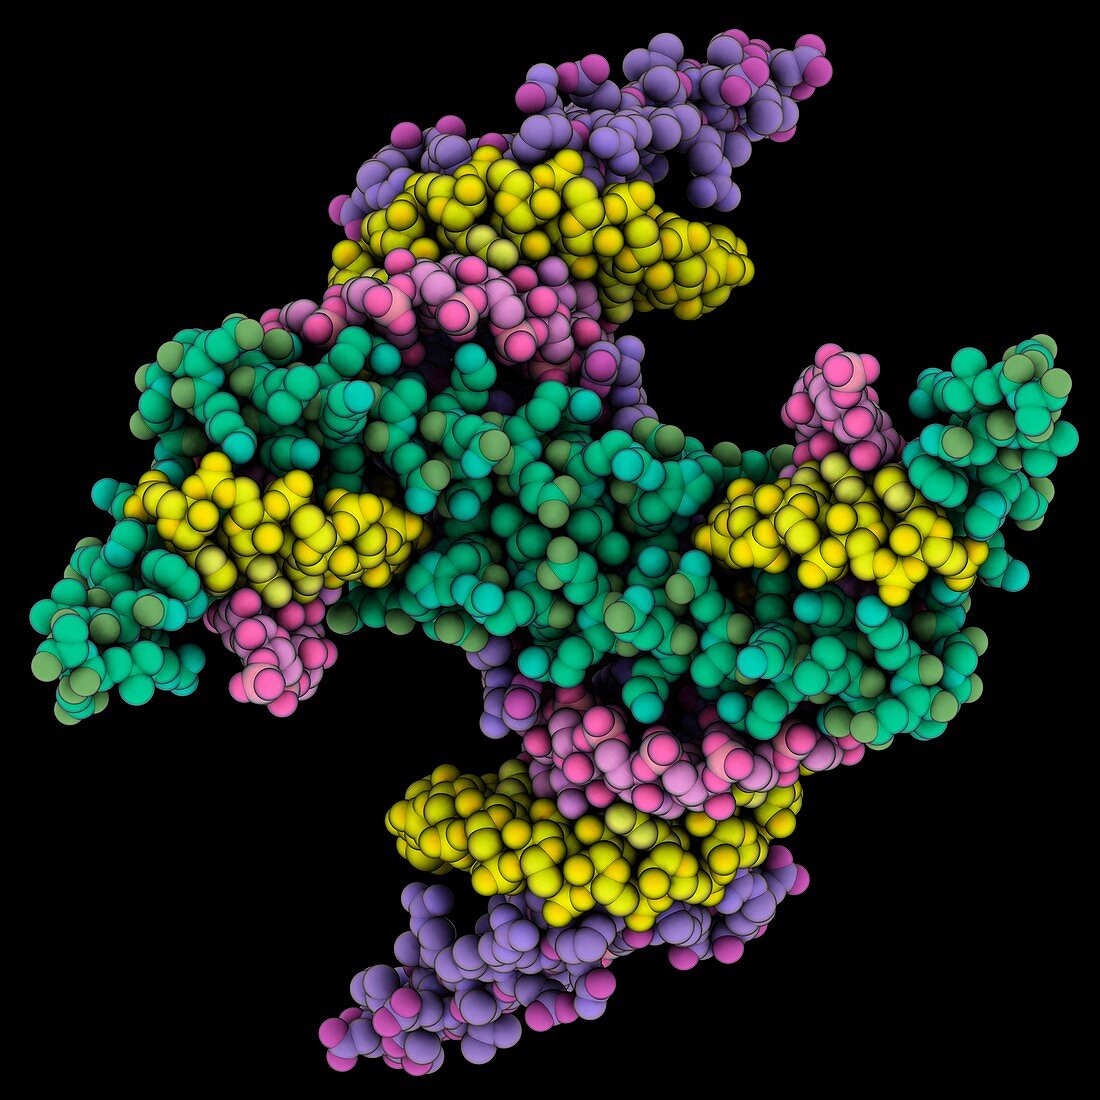 Gene silencing suppressor complex